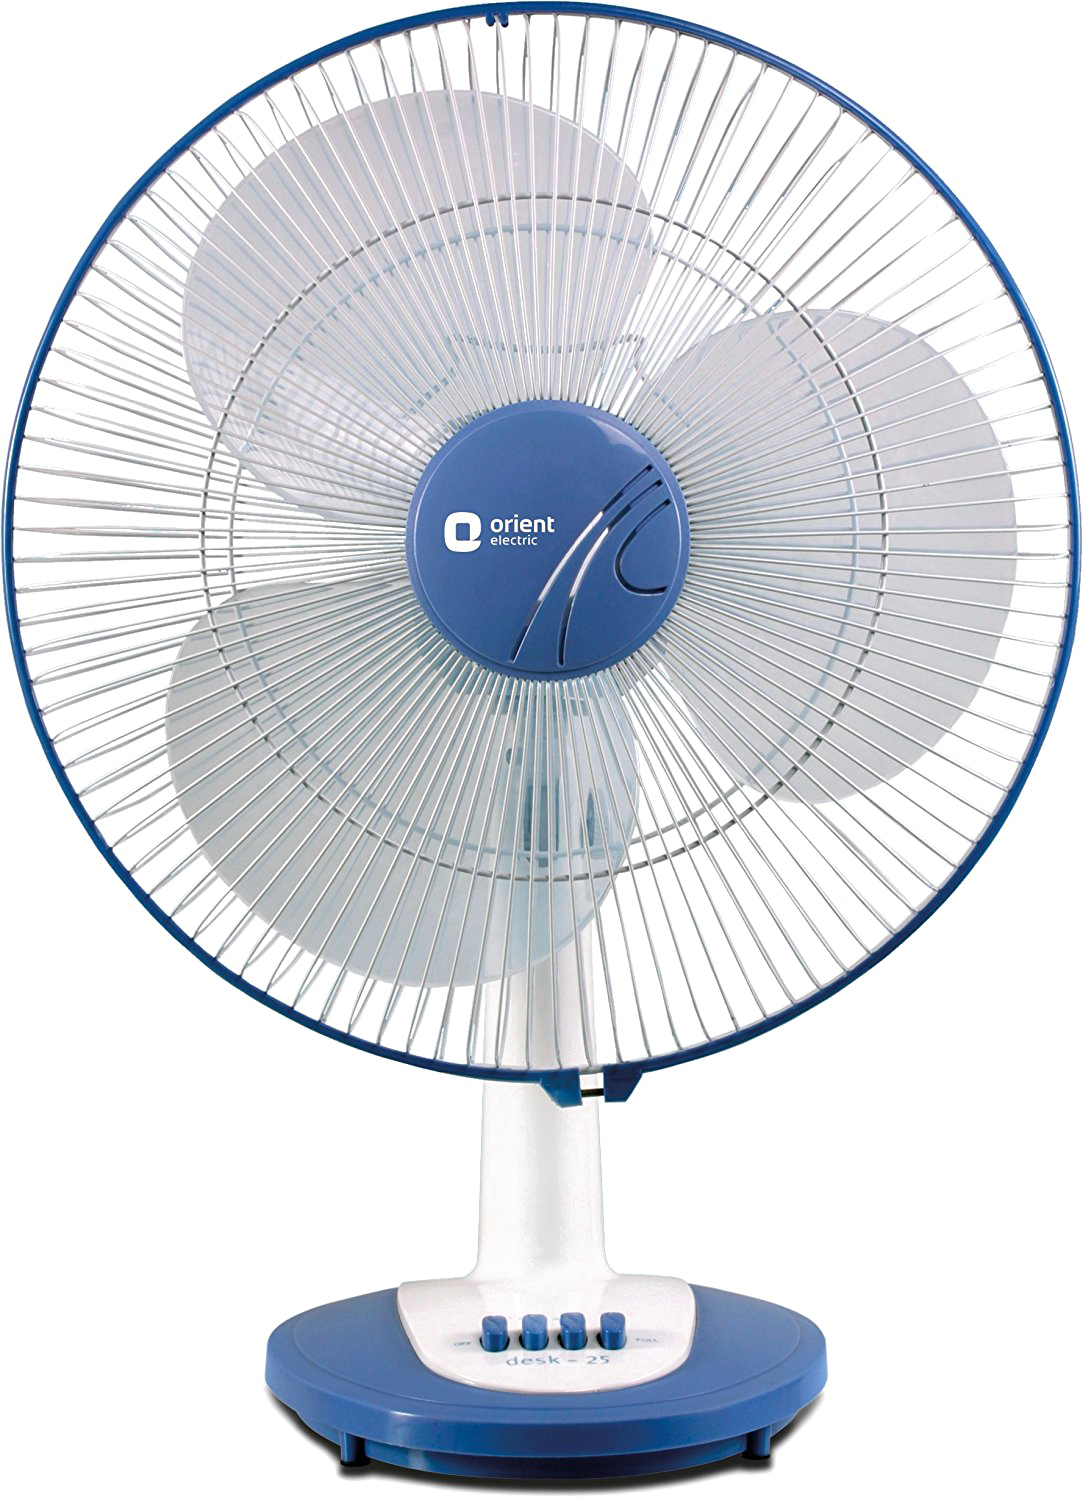 A Fan With A Blue Base